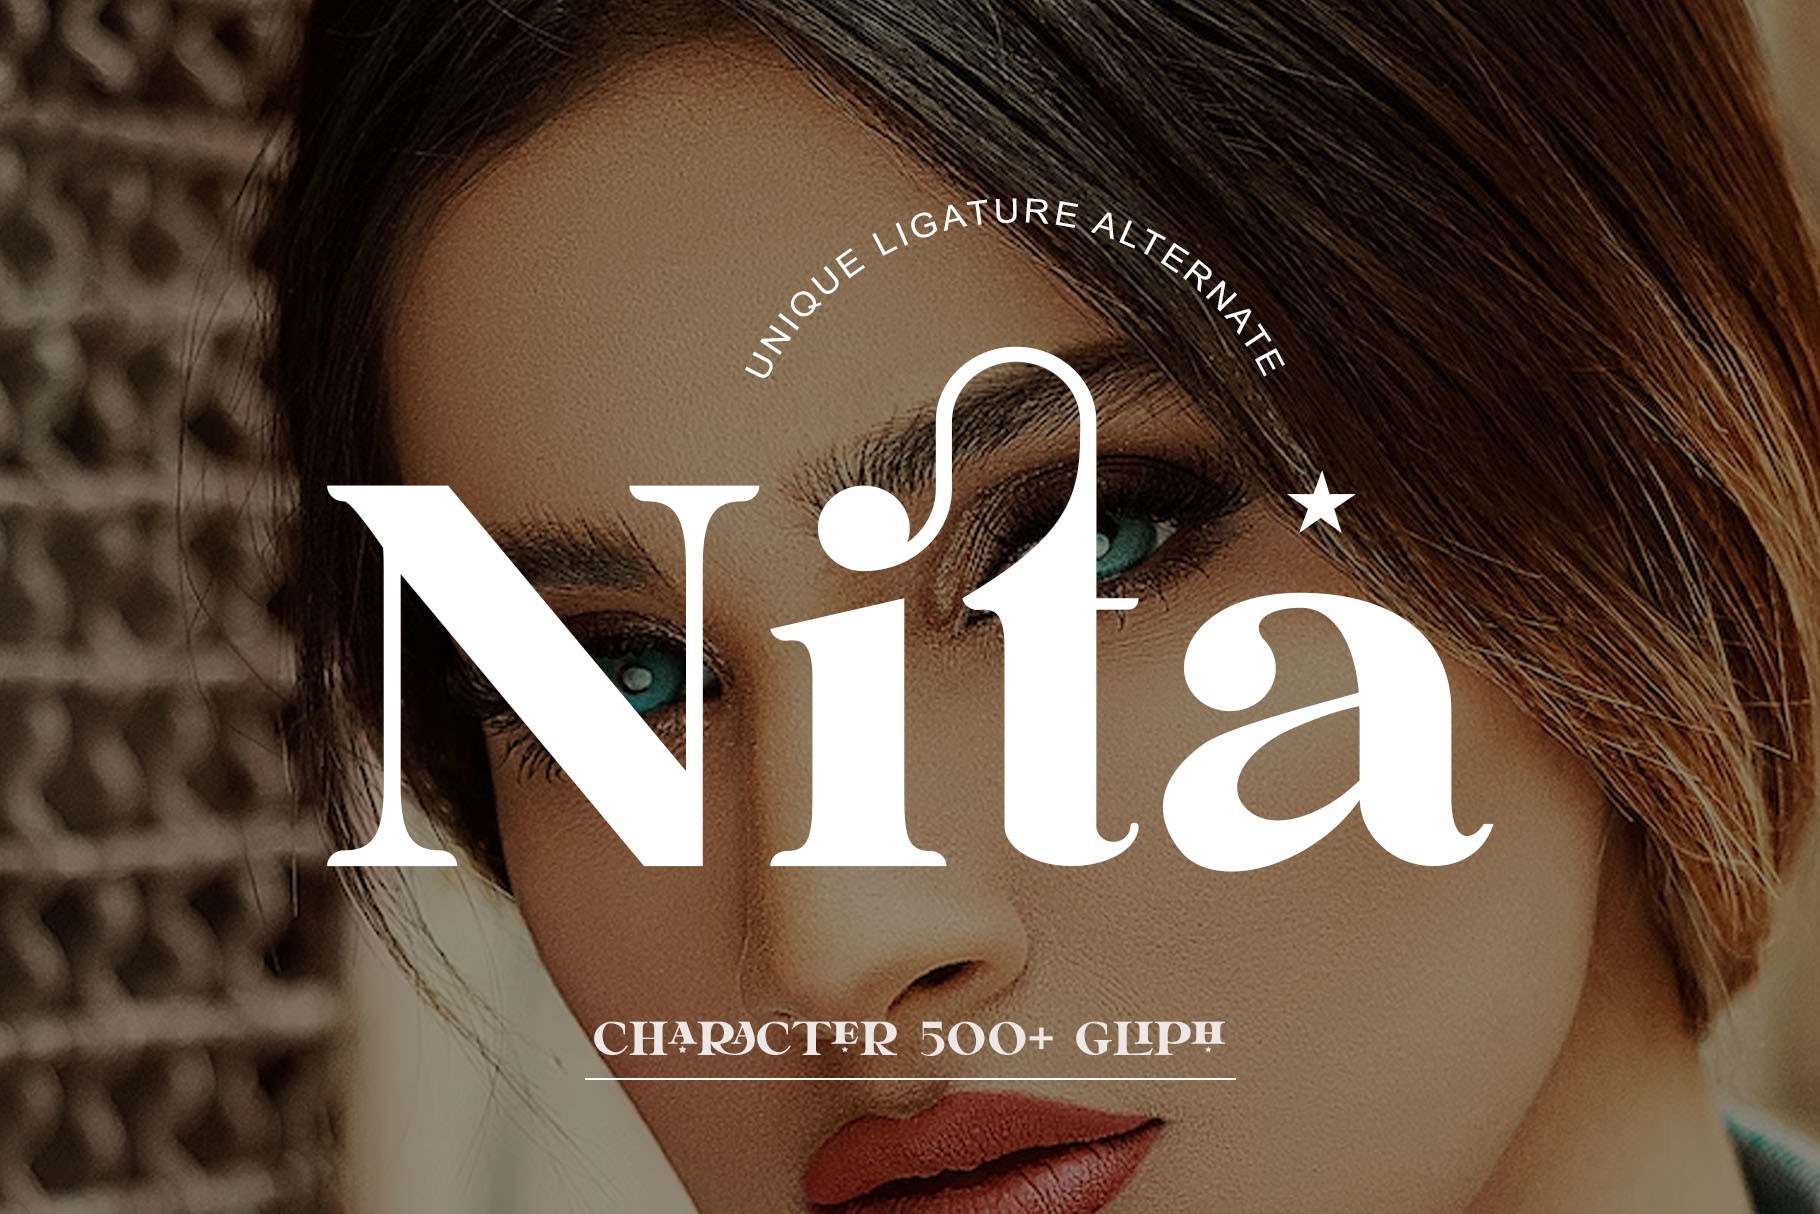 Nita Font